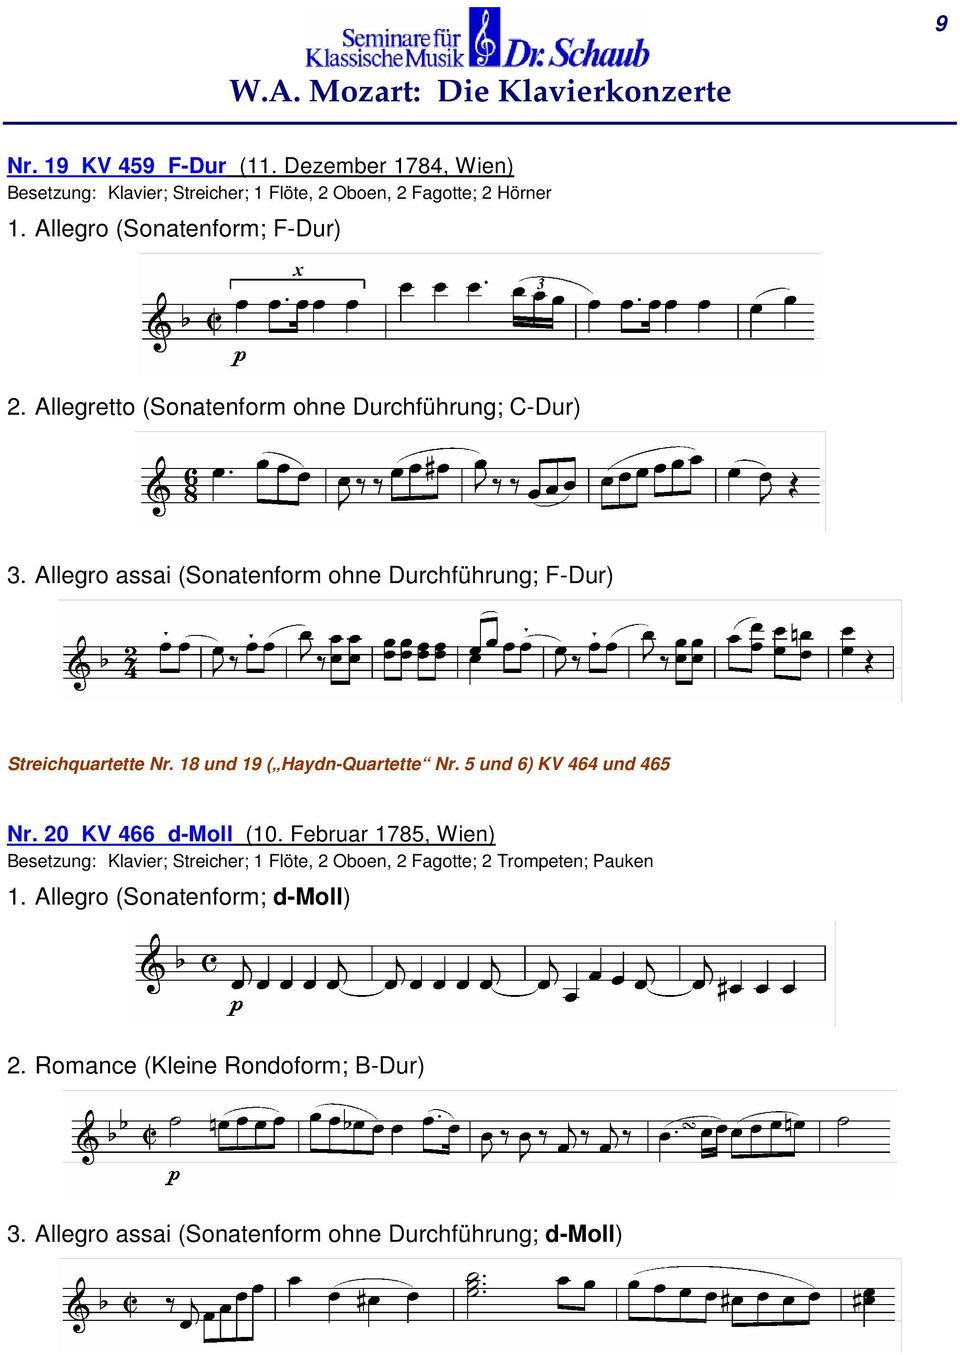 Allegro assai (Sonatenform ohne Durchführung; F-Dur) Streichquartette Nr. 18 und 19 ( Haydn-Quartette Nr. 5 und 6) KV 464 und 465 Nr.